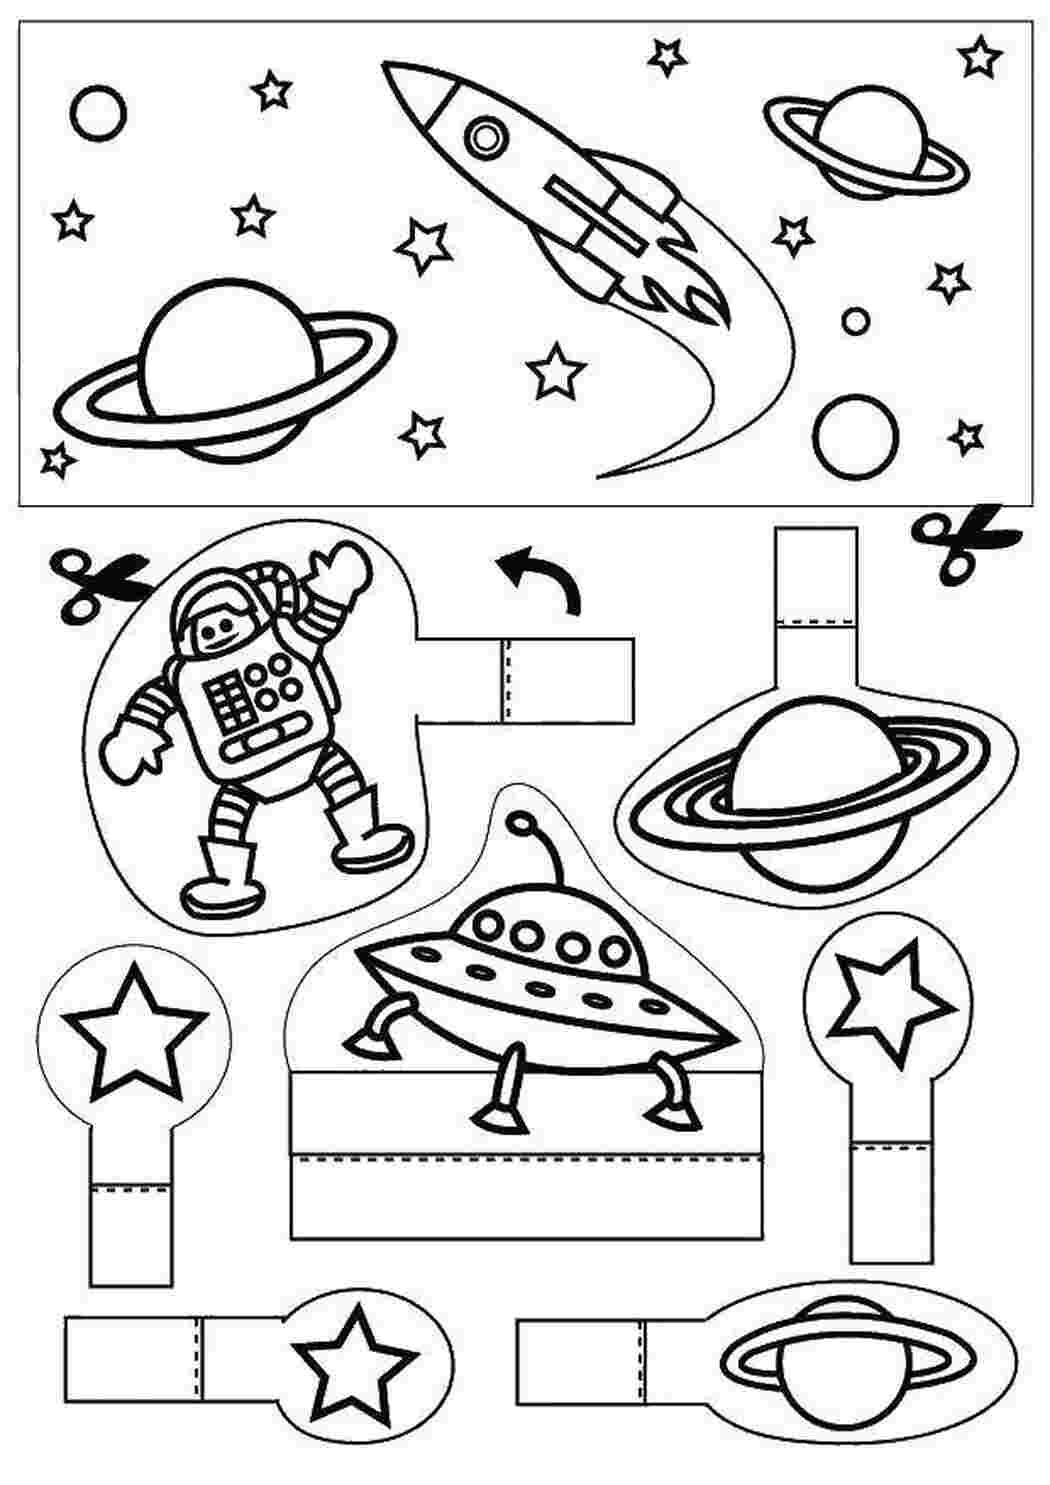 Шаблон космонавта для поделки ко дню космонавтики. Космос раскраска для детей. Раскраска. В космосе. Космос задания для детей. Космос задания для дошкольников.